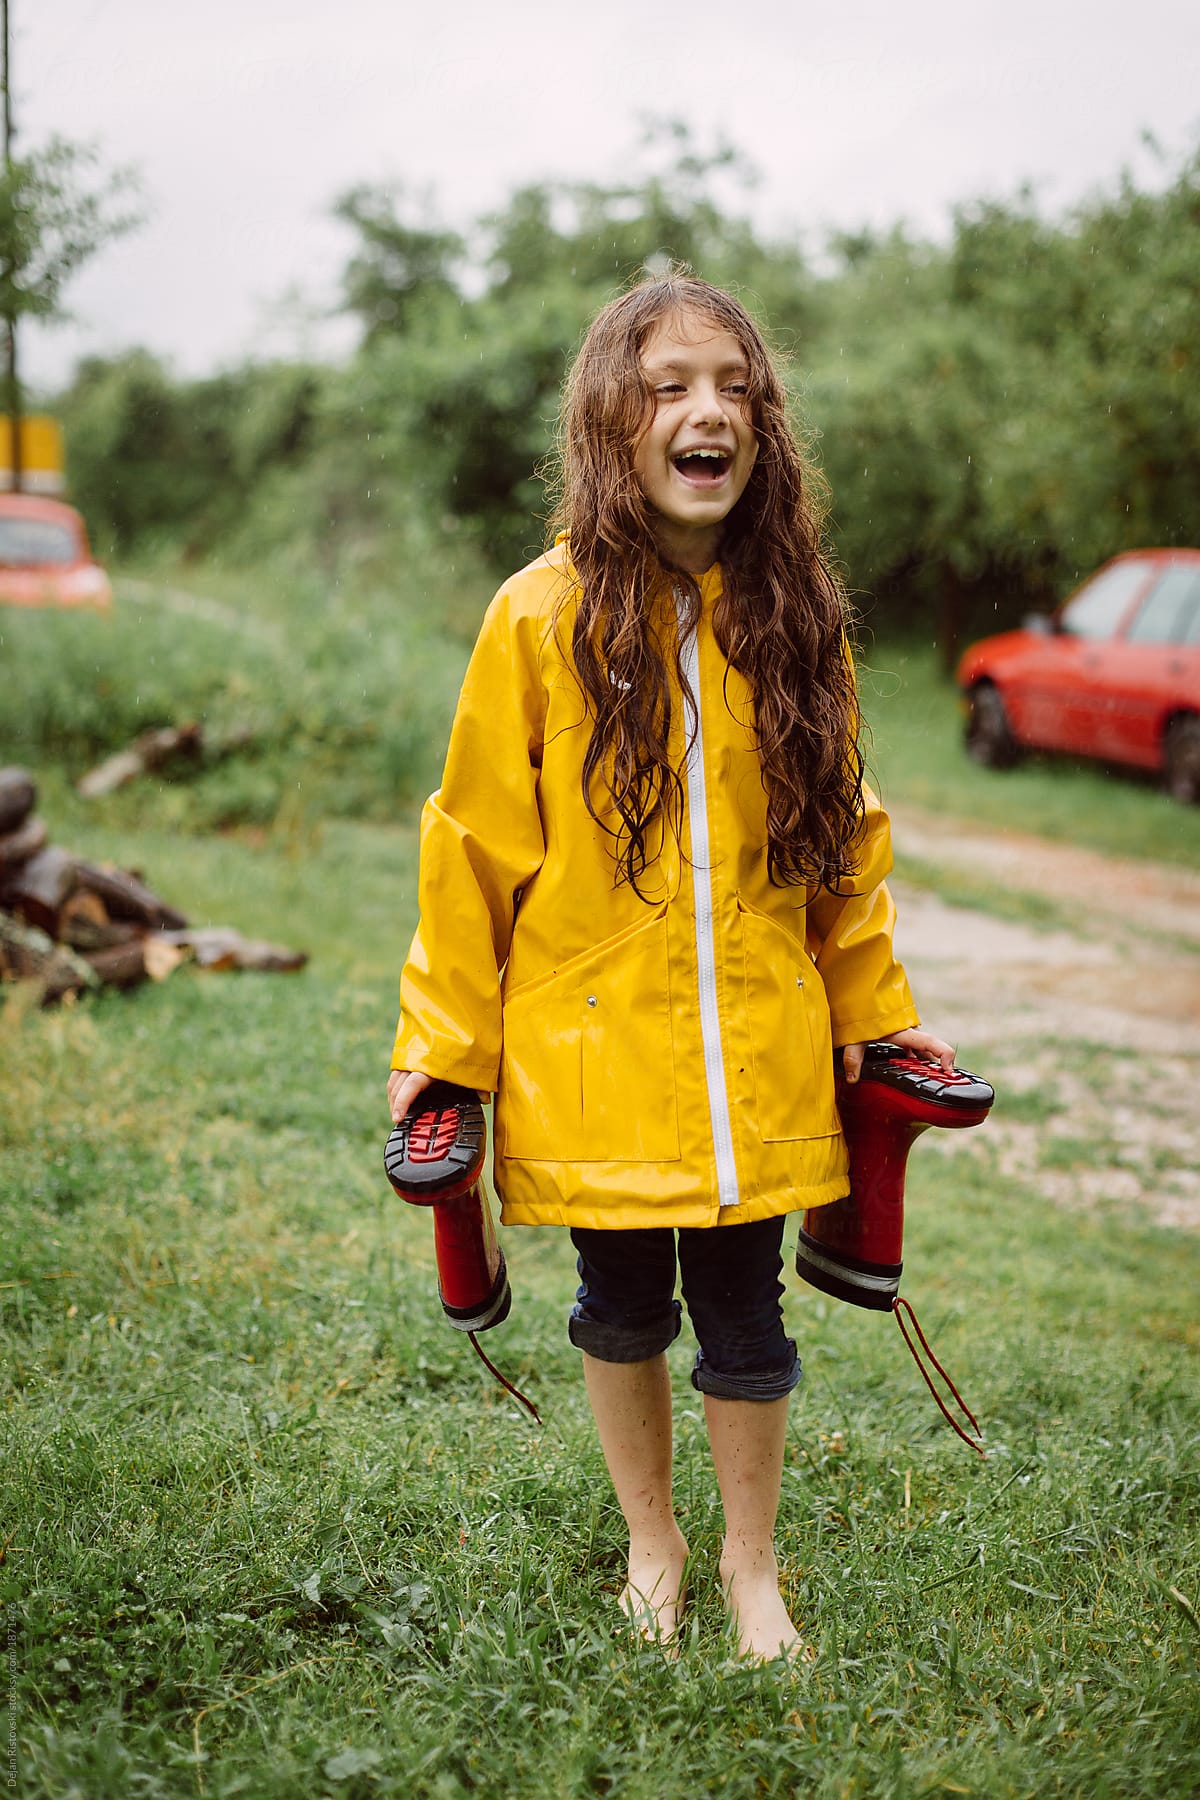 Young girl enjoys the rain